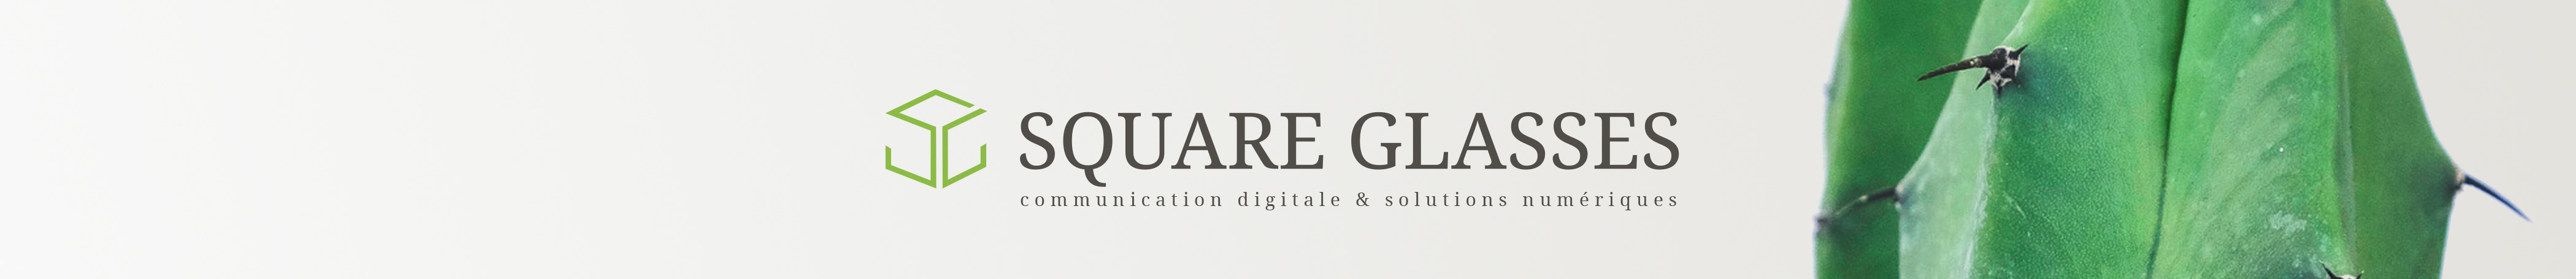 Square Glasses's profile banner